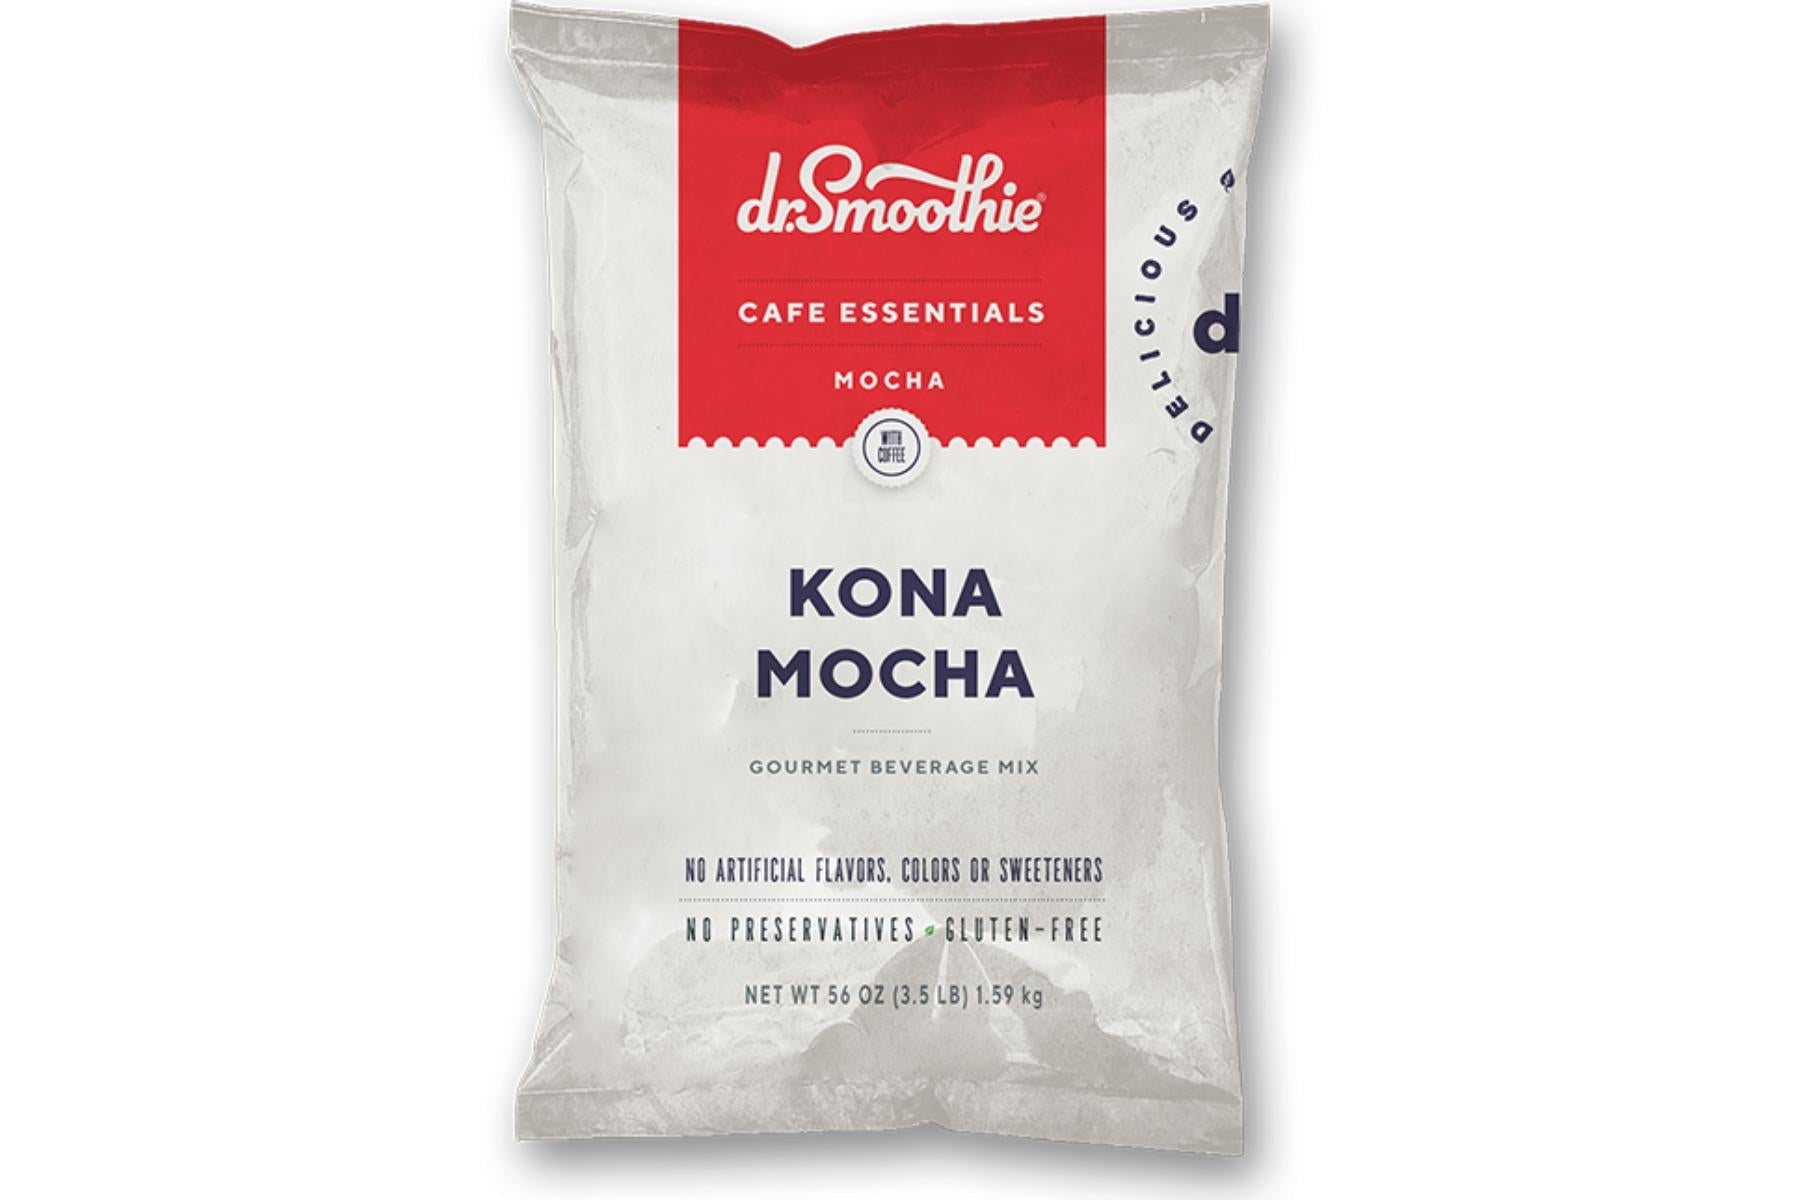 Dr. Smoothie Cafe Essentials Mocha - 3.5lb Bulk Bag: Kona Mocha